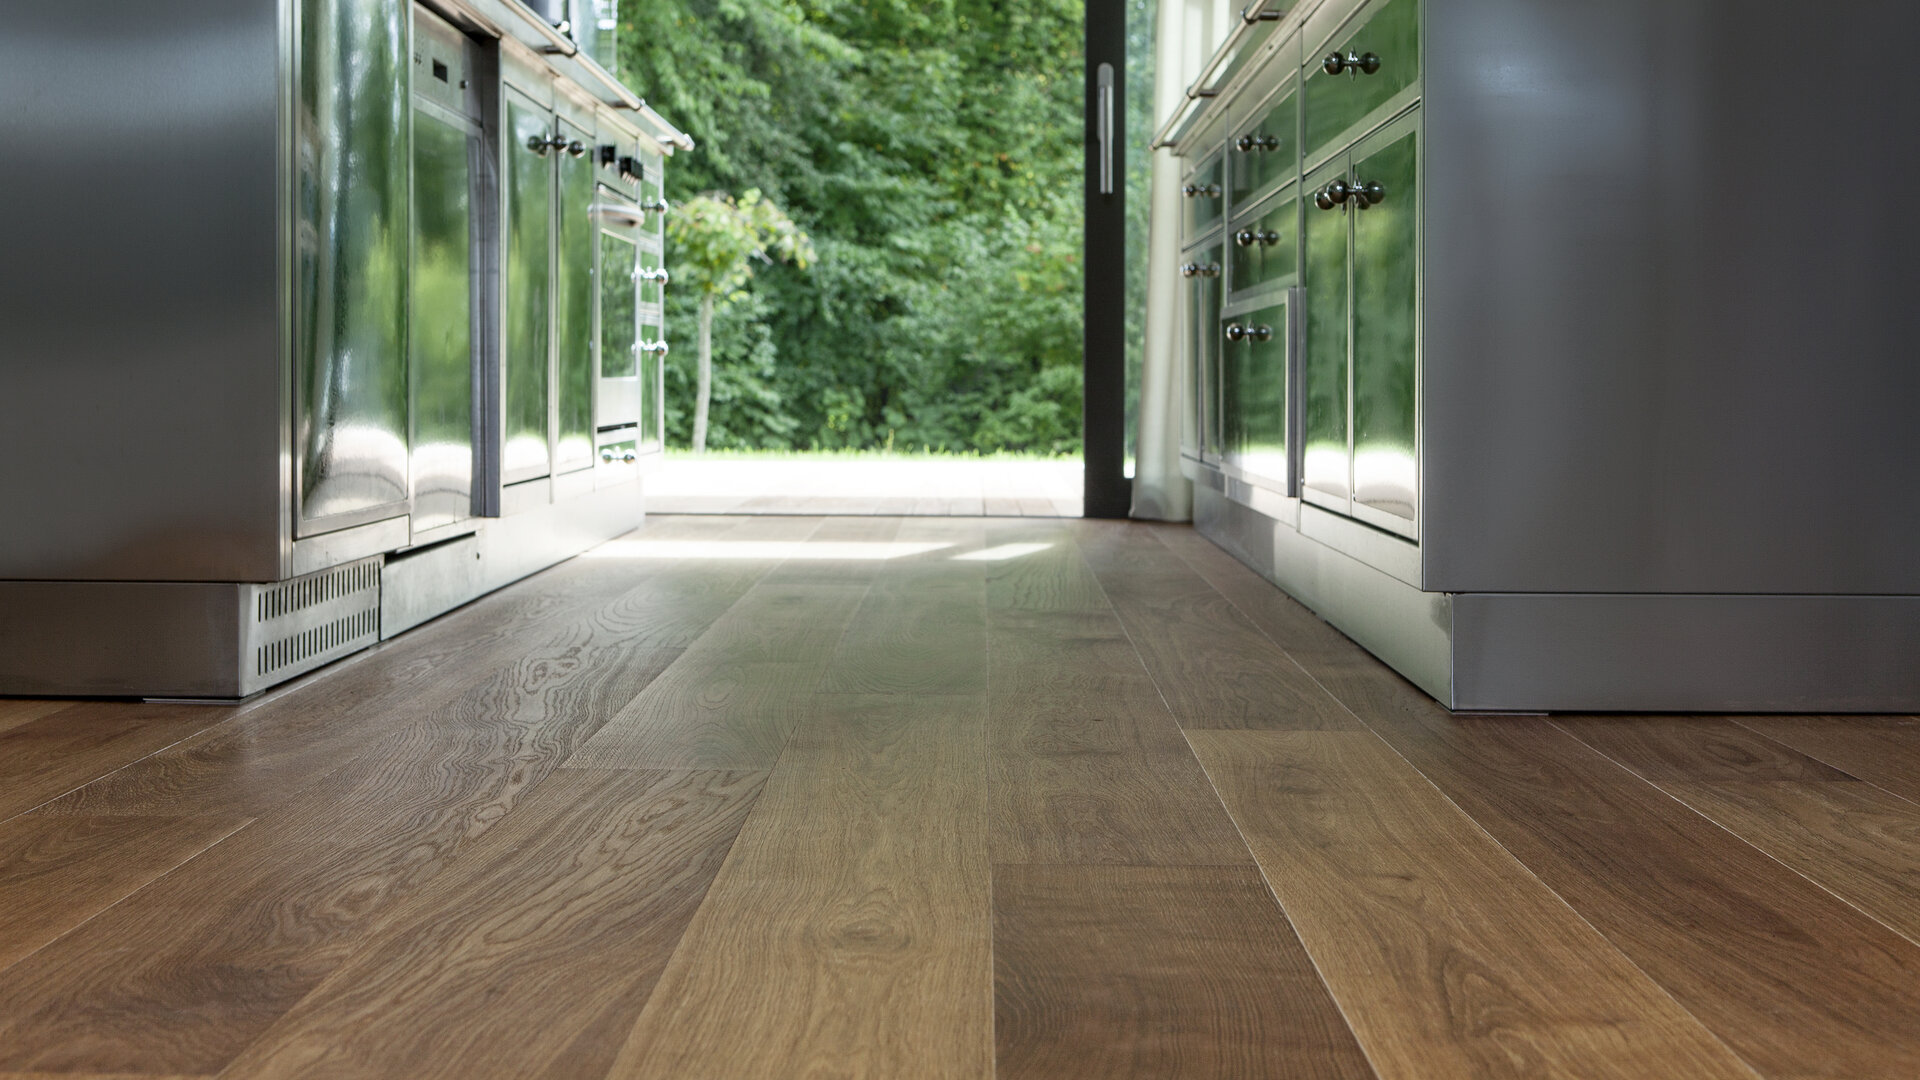 TRAPA Plank floor 
Bog-look oak placid brushed natural